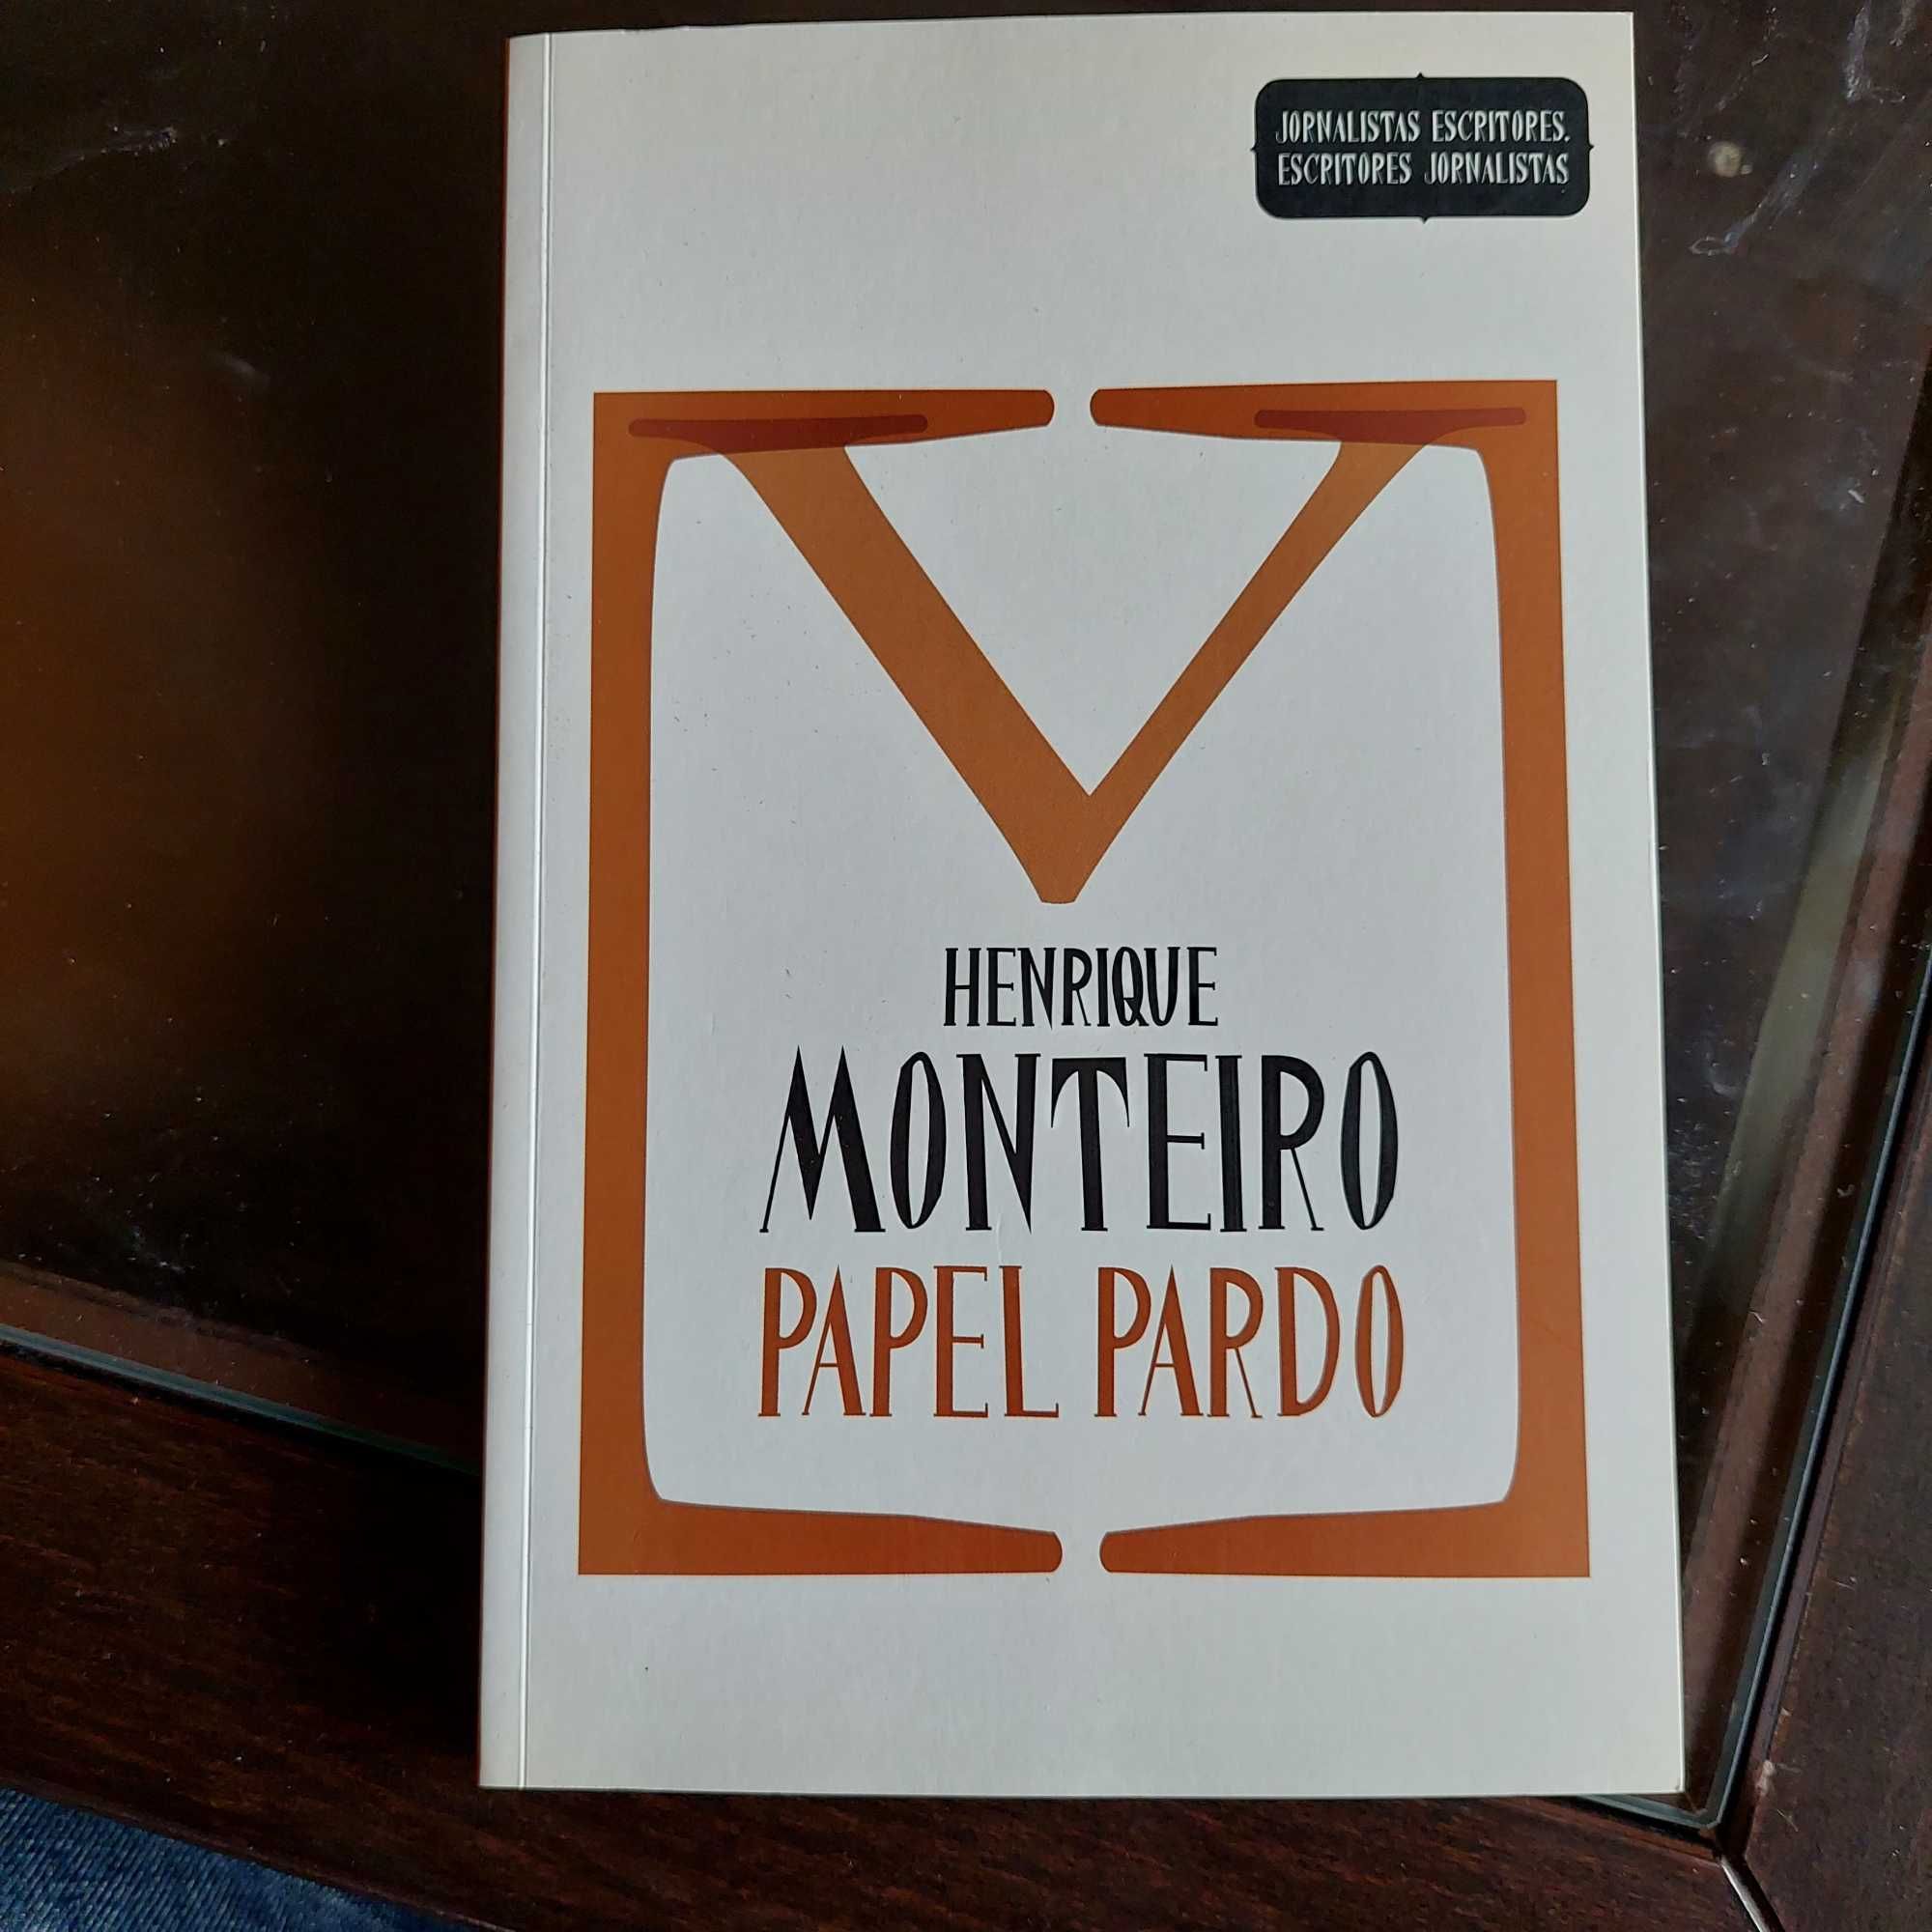 Henrique Monteiro - Jornalistas Escpitopes: Papel Pardo